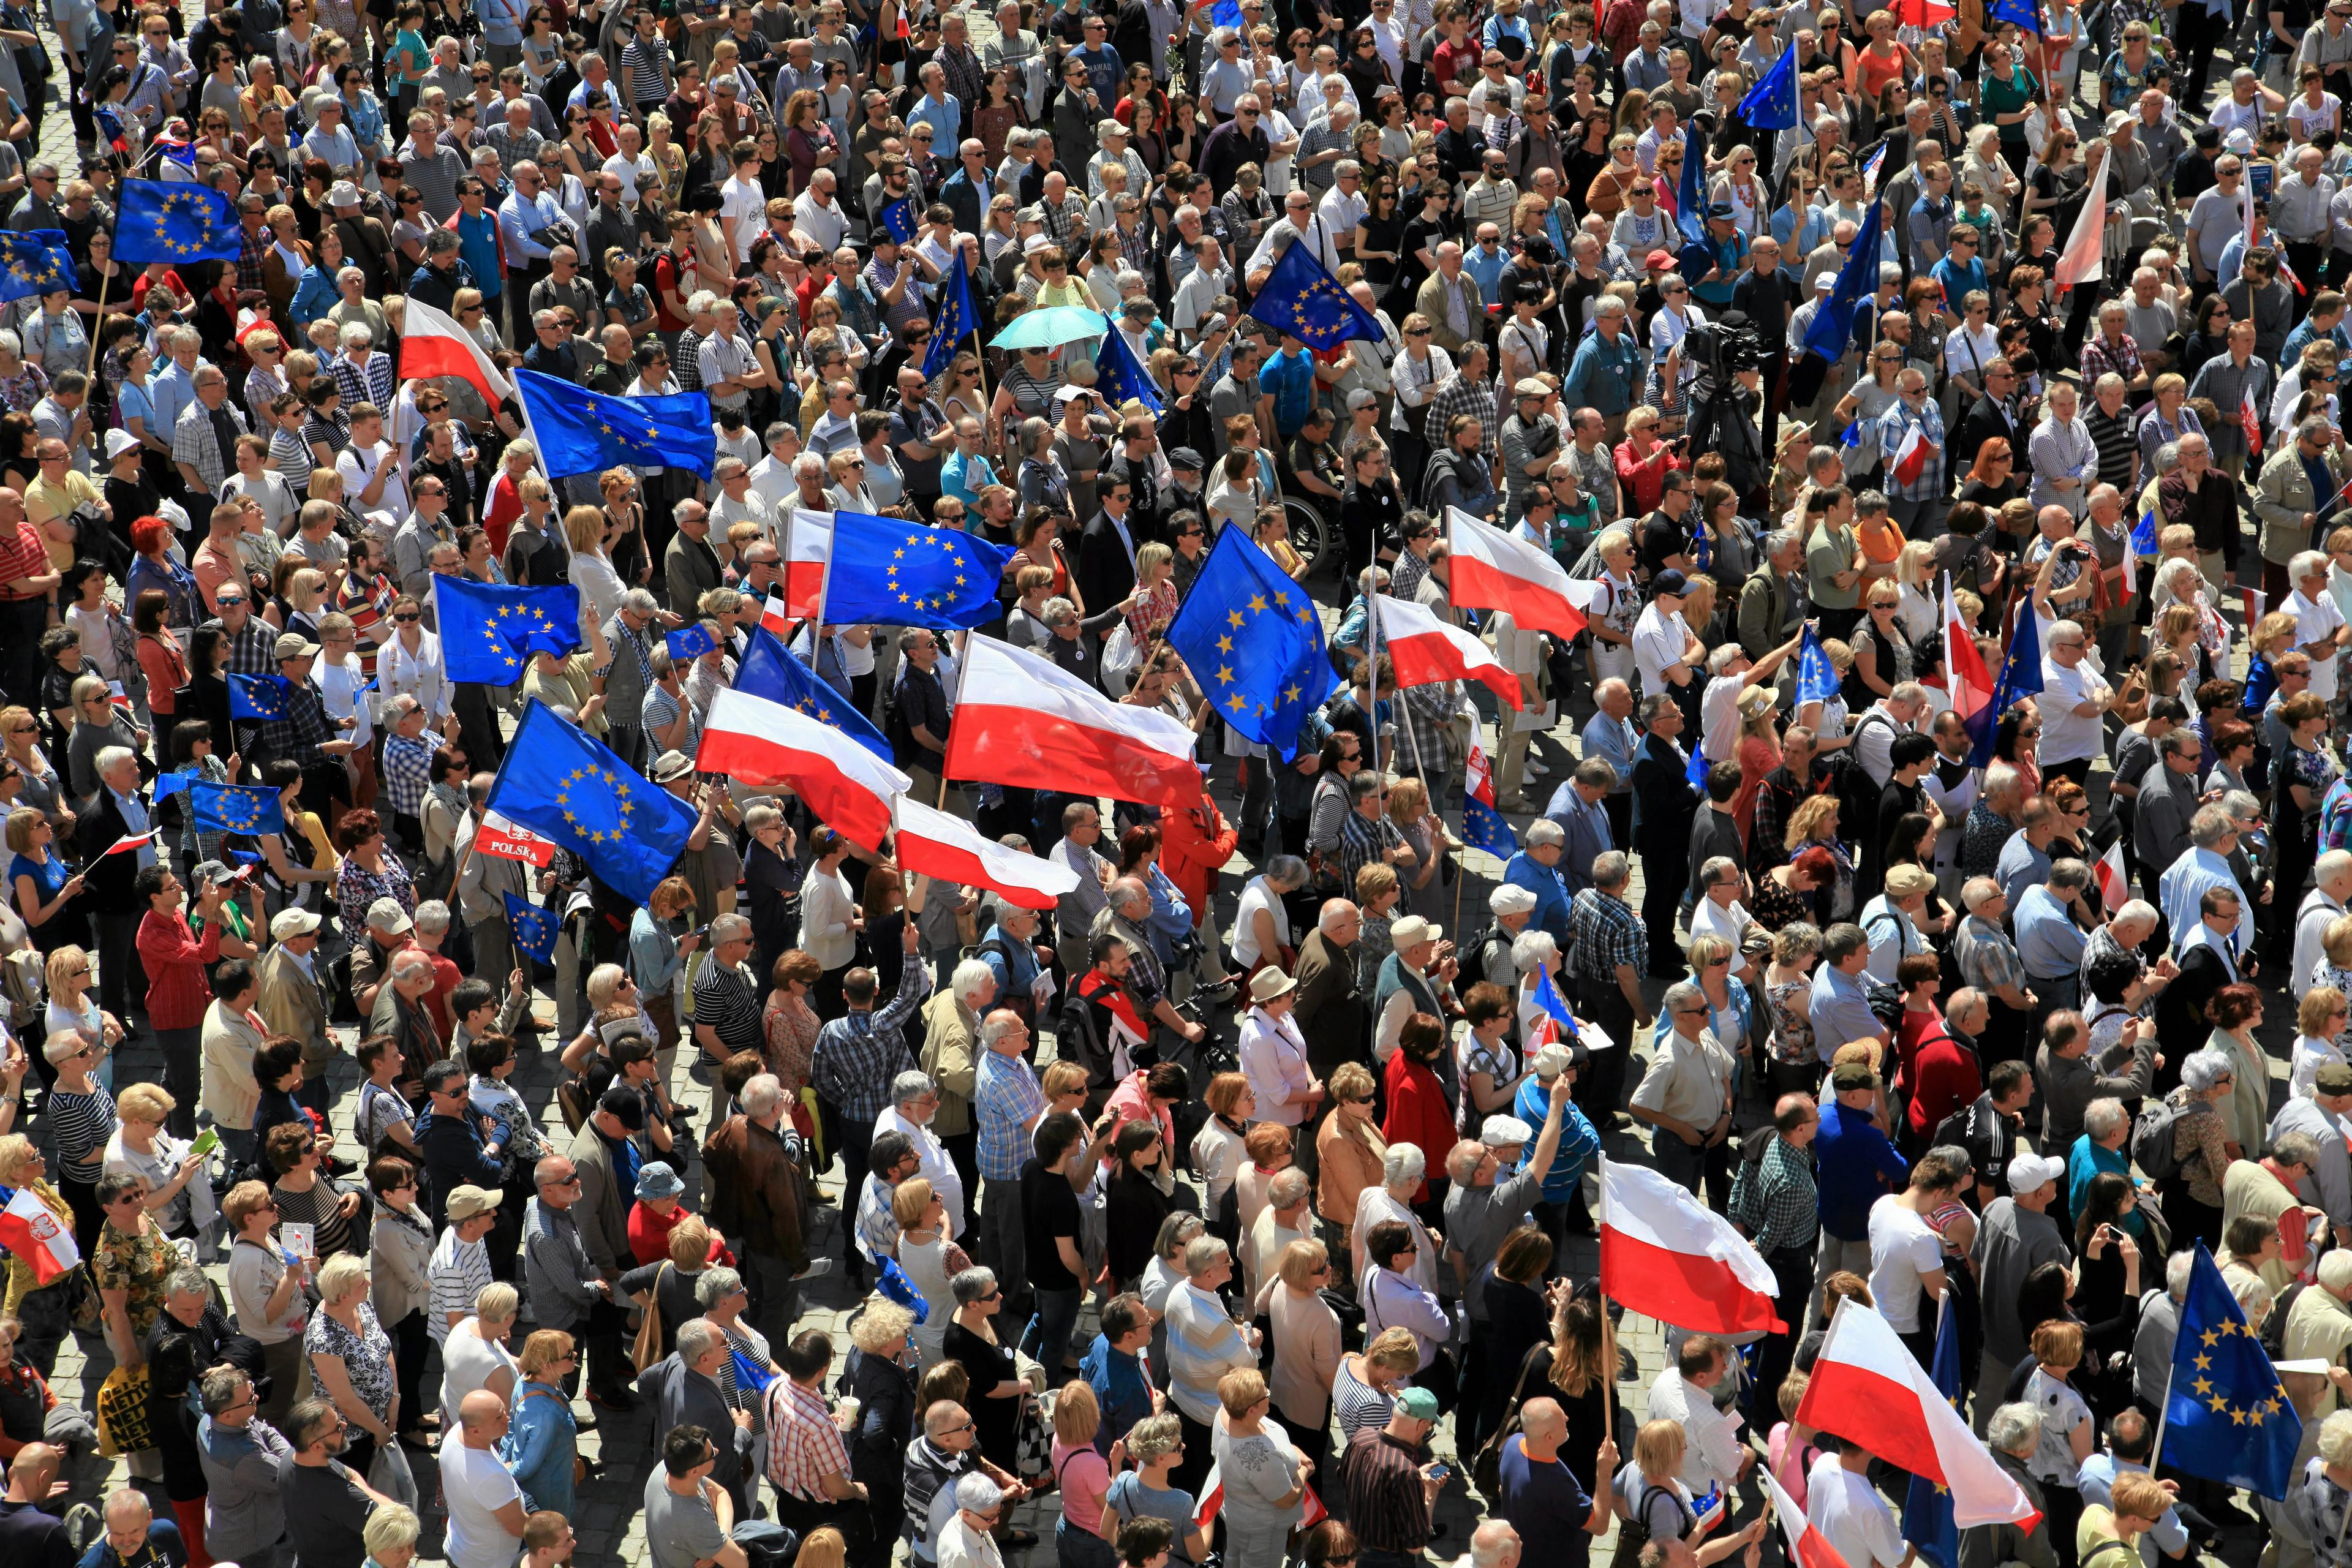 07.05.2016 Wroclaw , Rynek . Demonstracja KOD .
Fot. Mieczyslaw Michalak / Agencja Gazeta